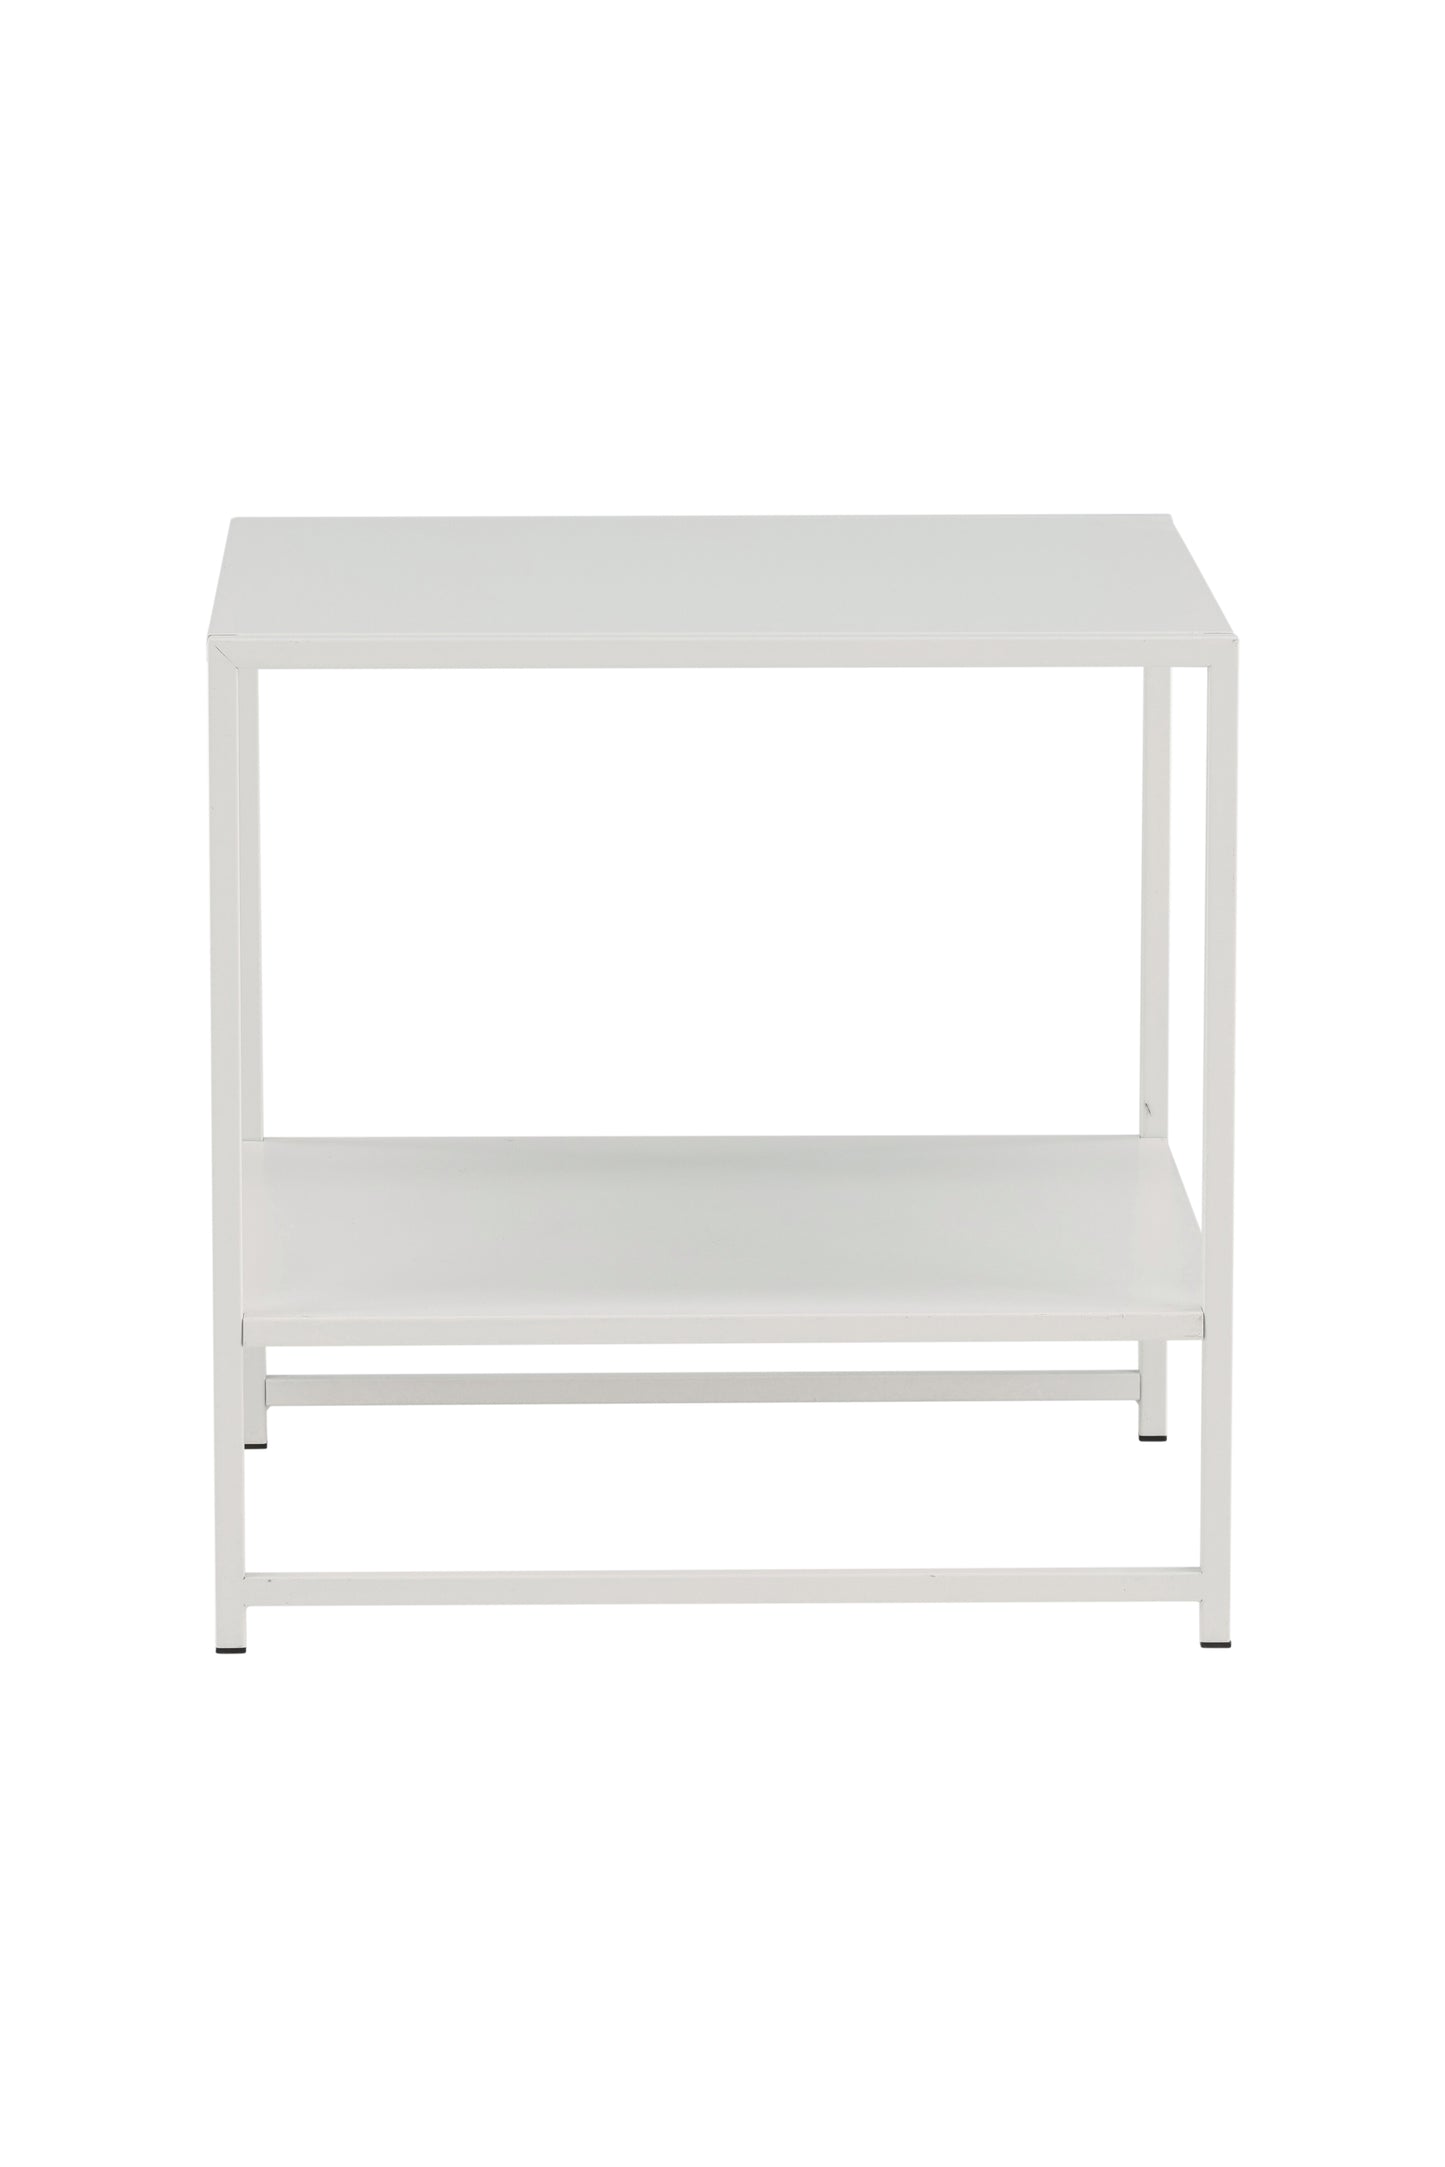 Staal - Sidebord med hylde - Hvid